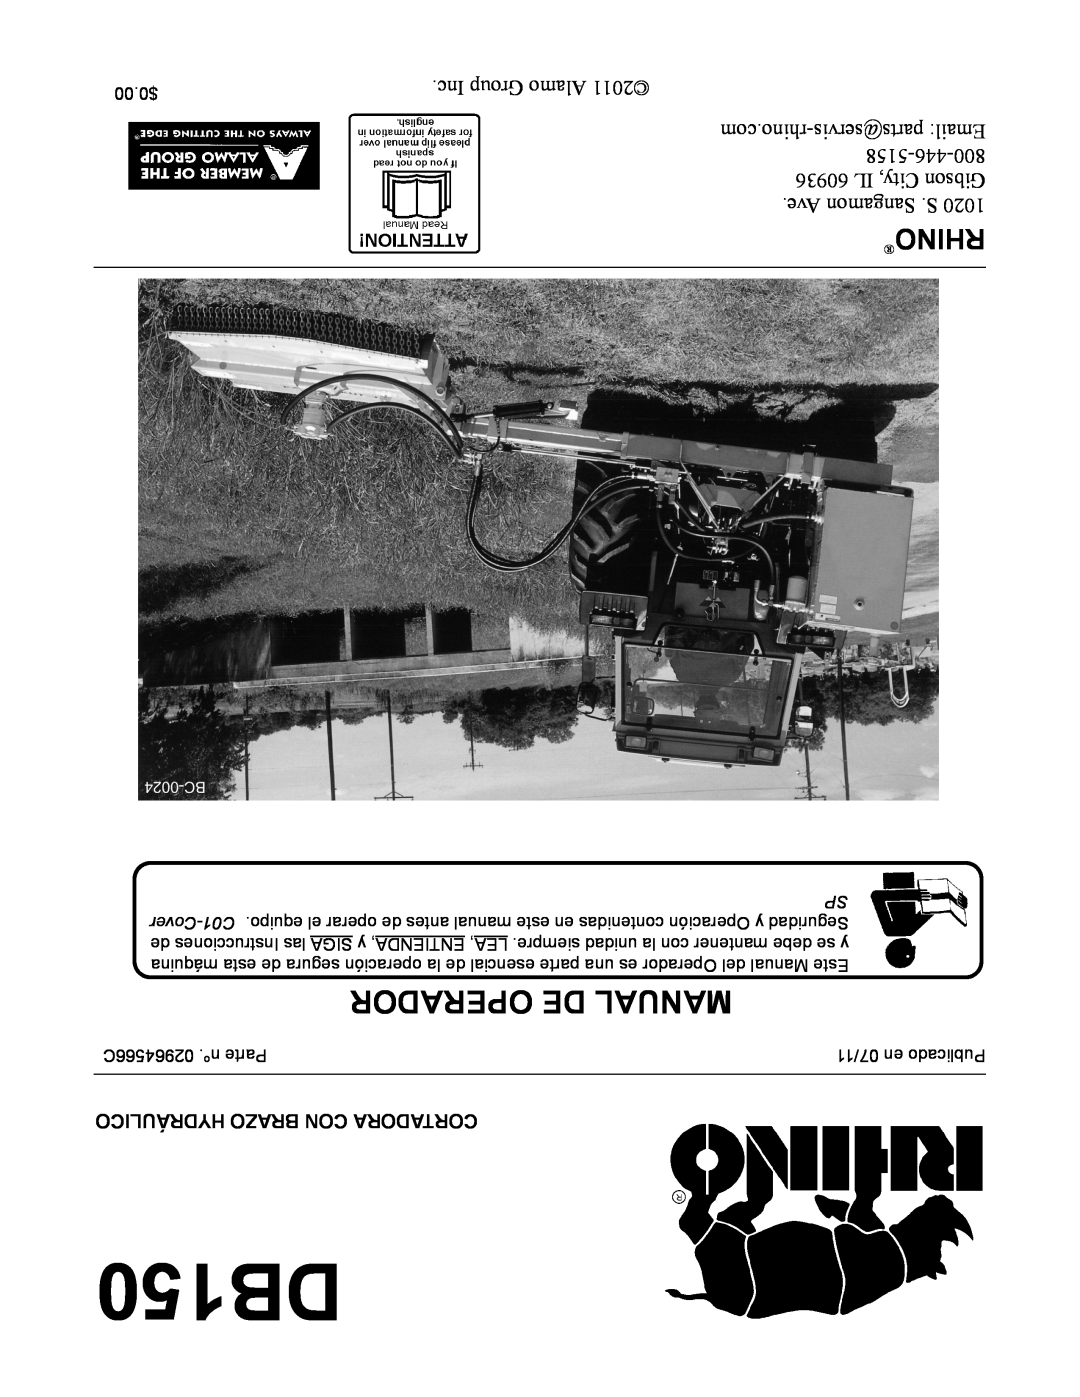 Rhino Mounts DB150 Operador De Manual, Rhino, Hydráulico Brazo Con Cortadora, 02964566C .nº Parte, 07/11 en Publicado 